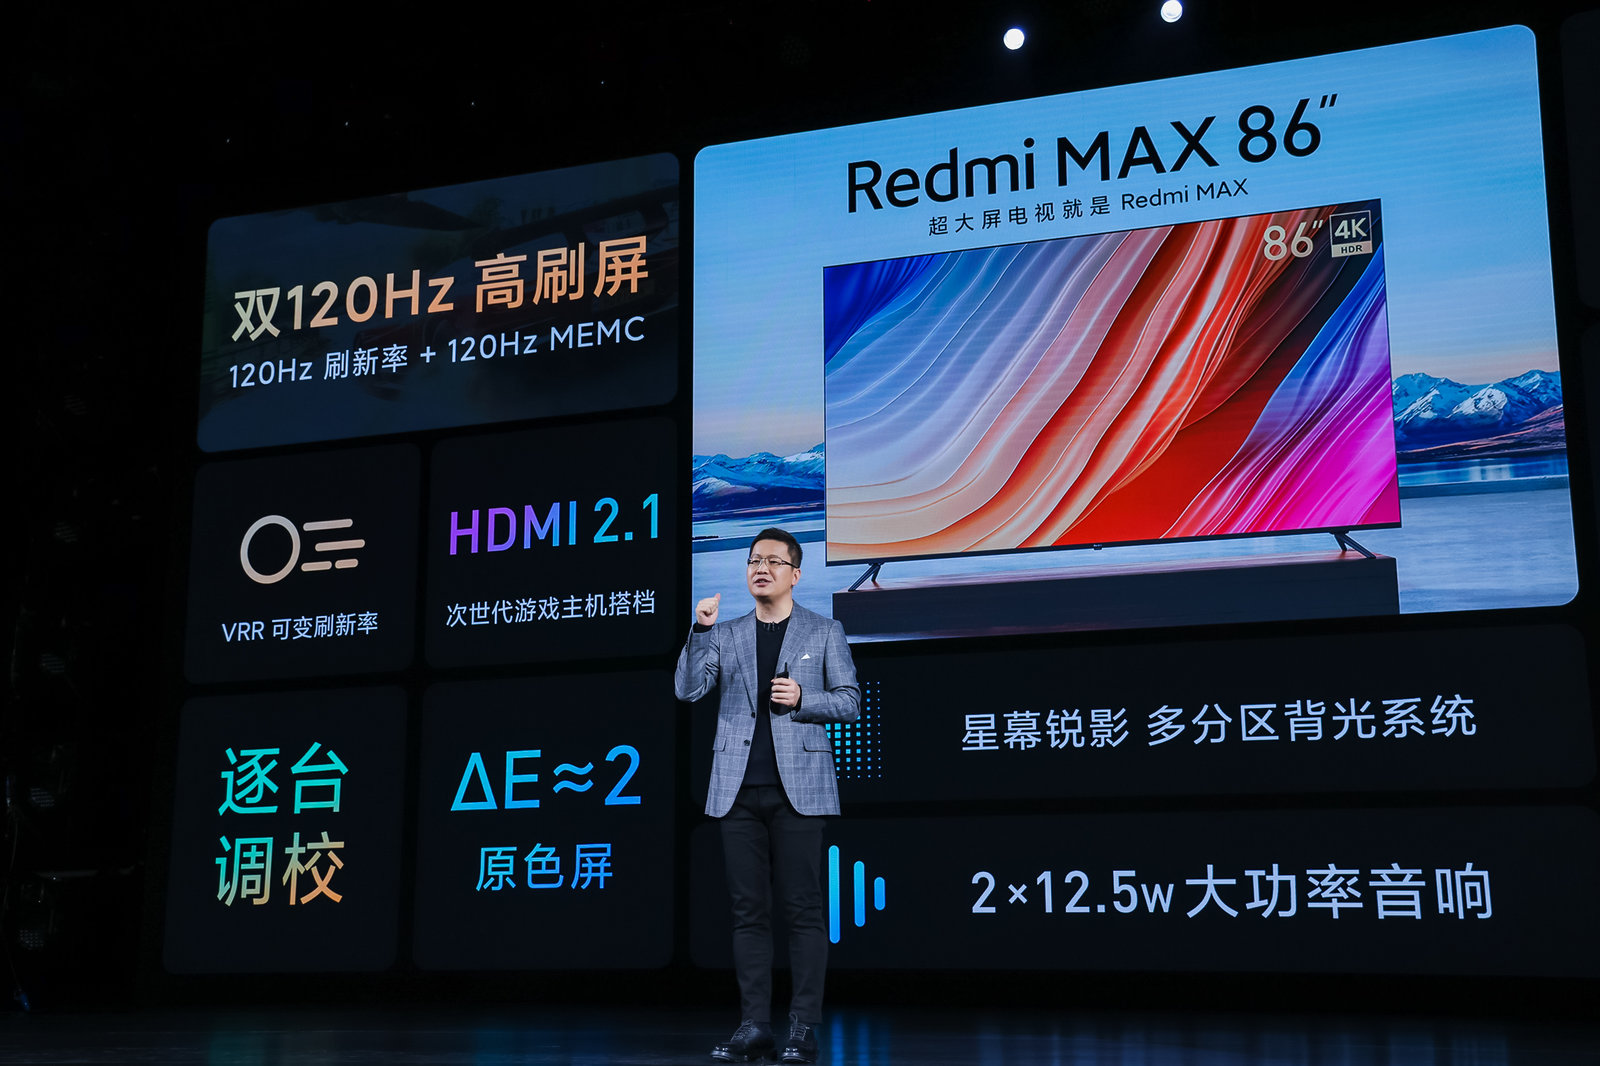 重新定义超大屏 Redmi MAX 86”智能电视仅售7999元 智能公会